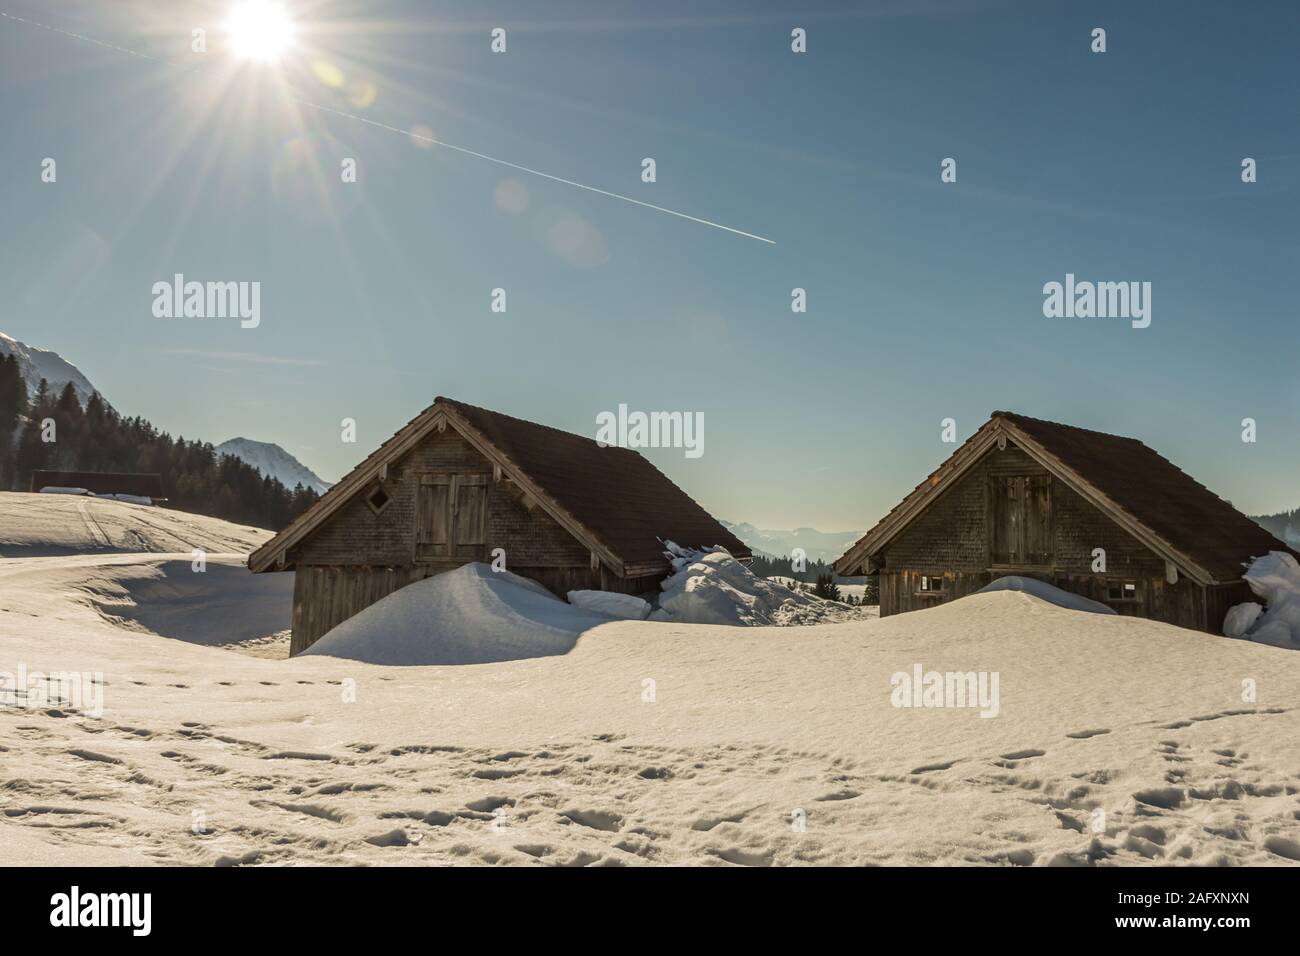 Winter landscape with wooden huts, Schwaegalp, Canton of Appenzell Ausserrhoden, Switzerland Stock Photo